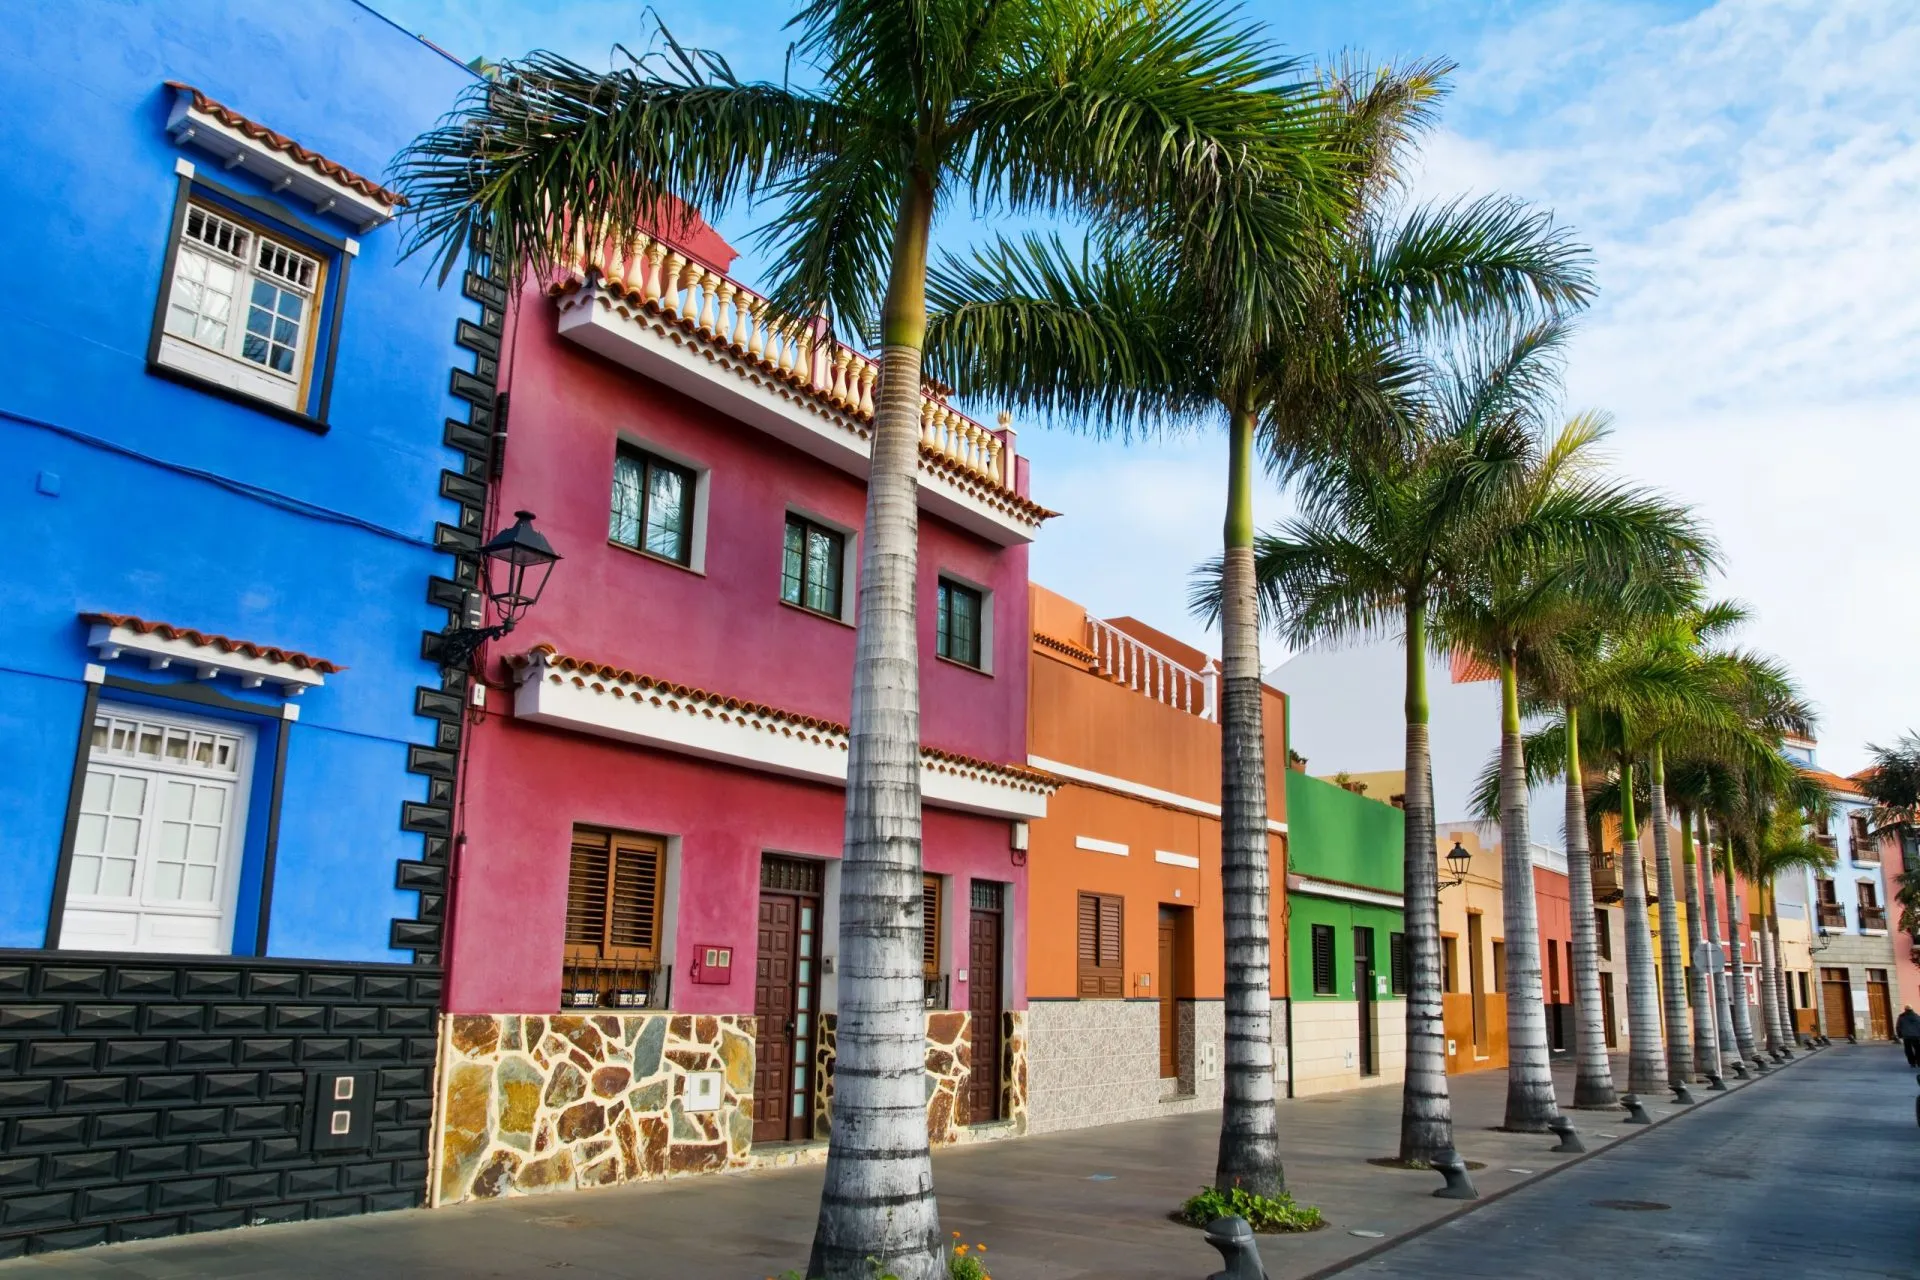 Bunte Häuser und Palmen auf einer Straße in Puerto de la Cruz, Teneriffa, Kanarische Inseln.